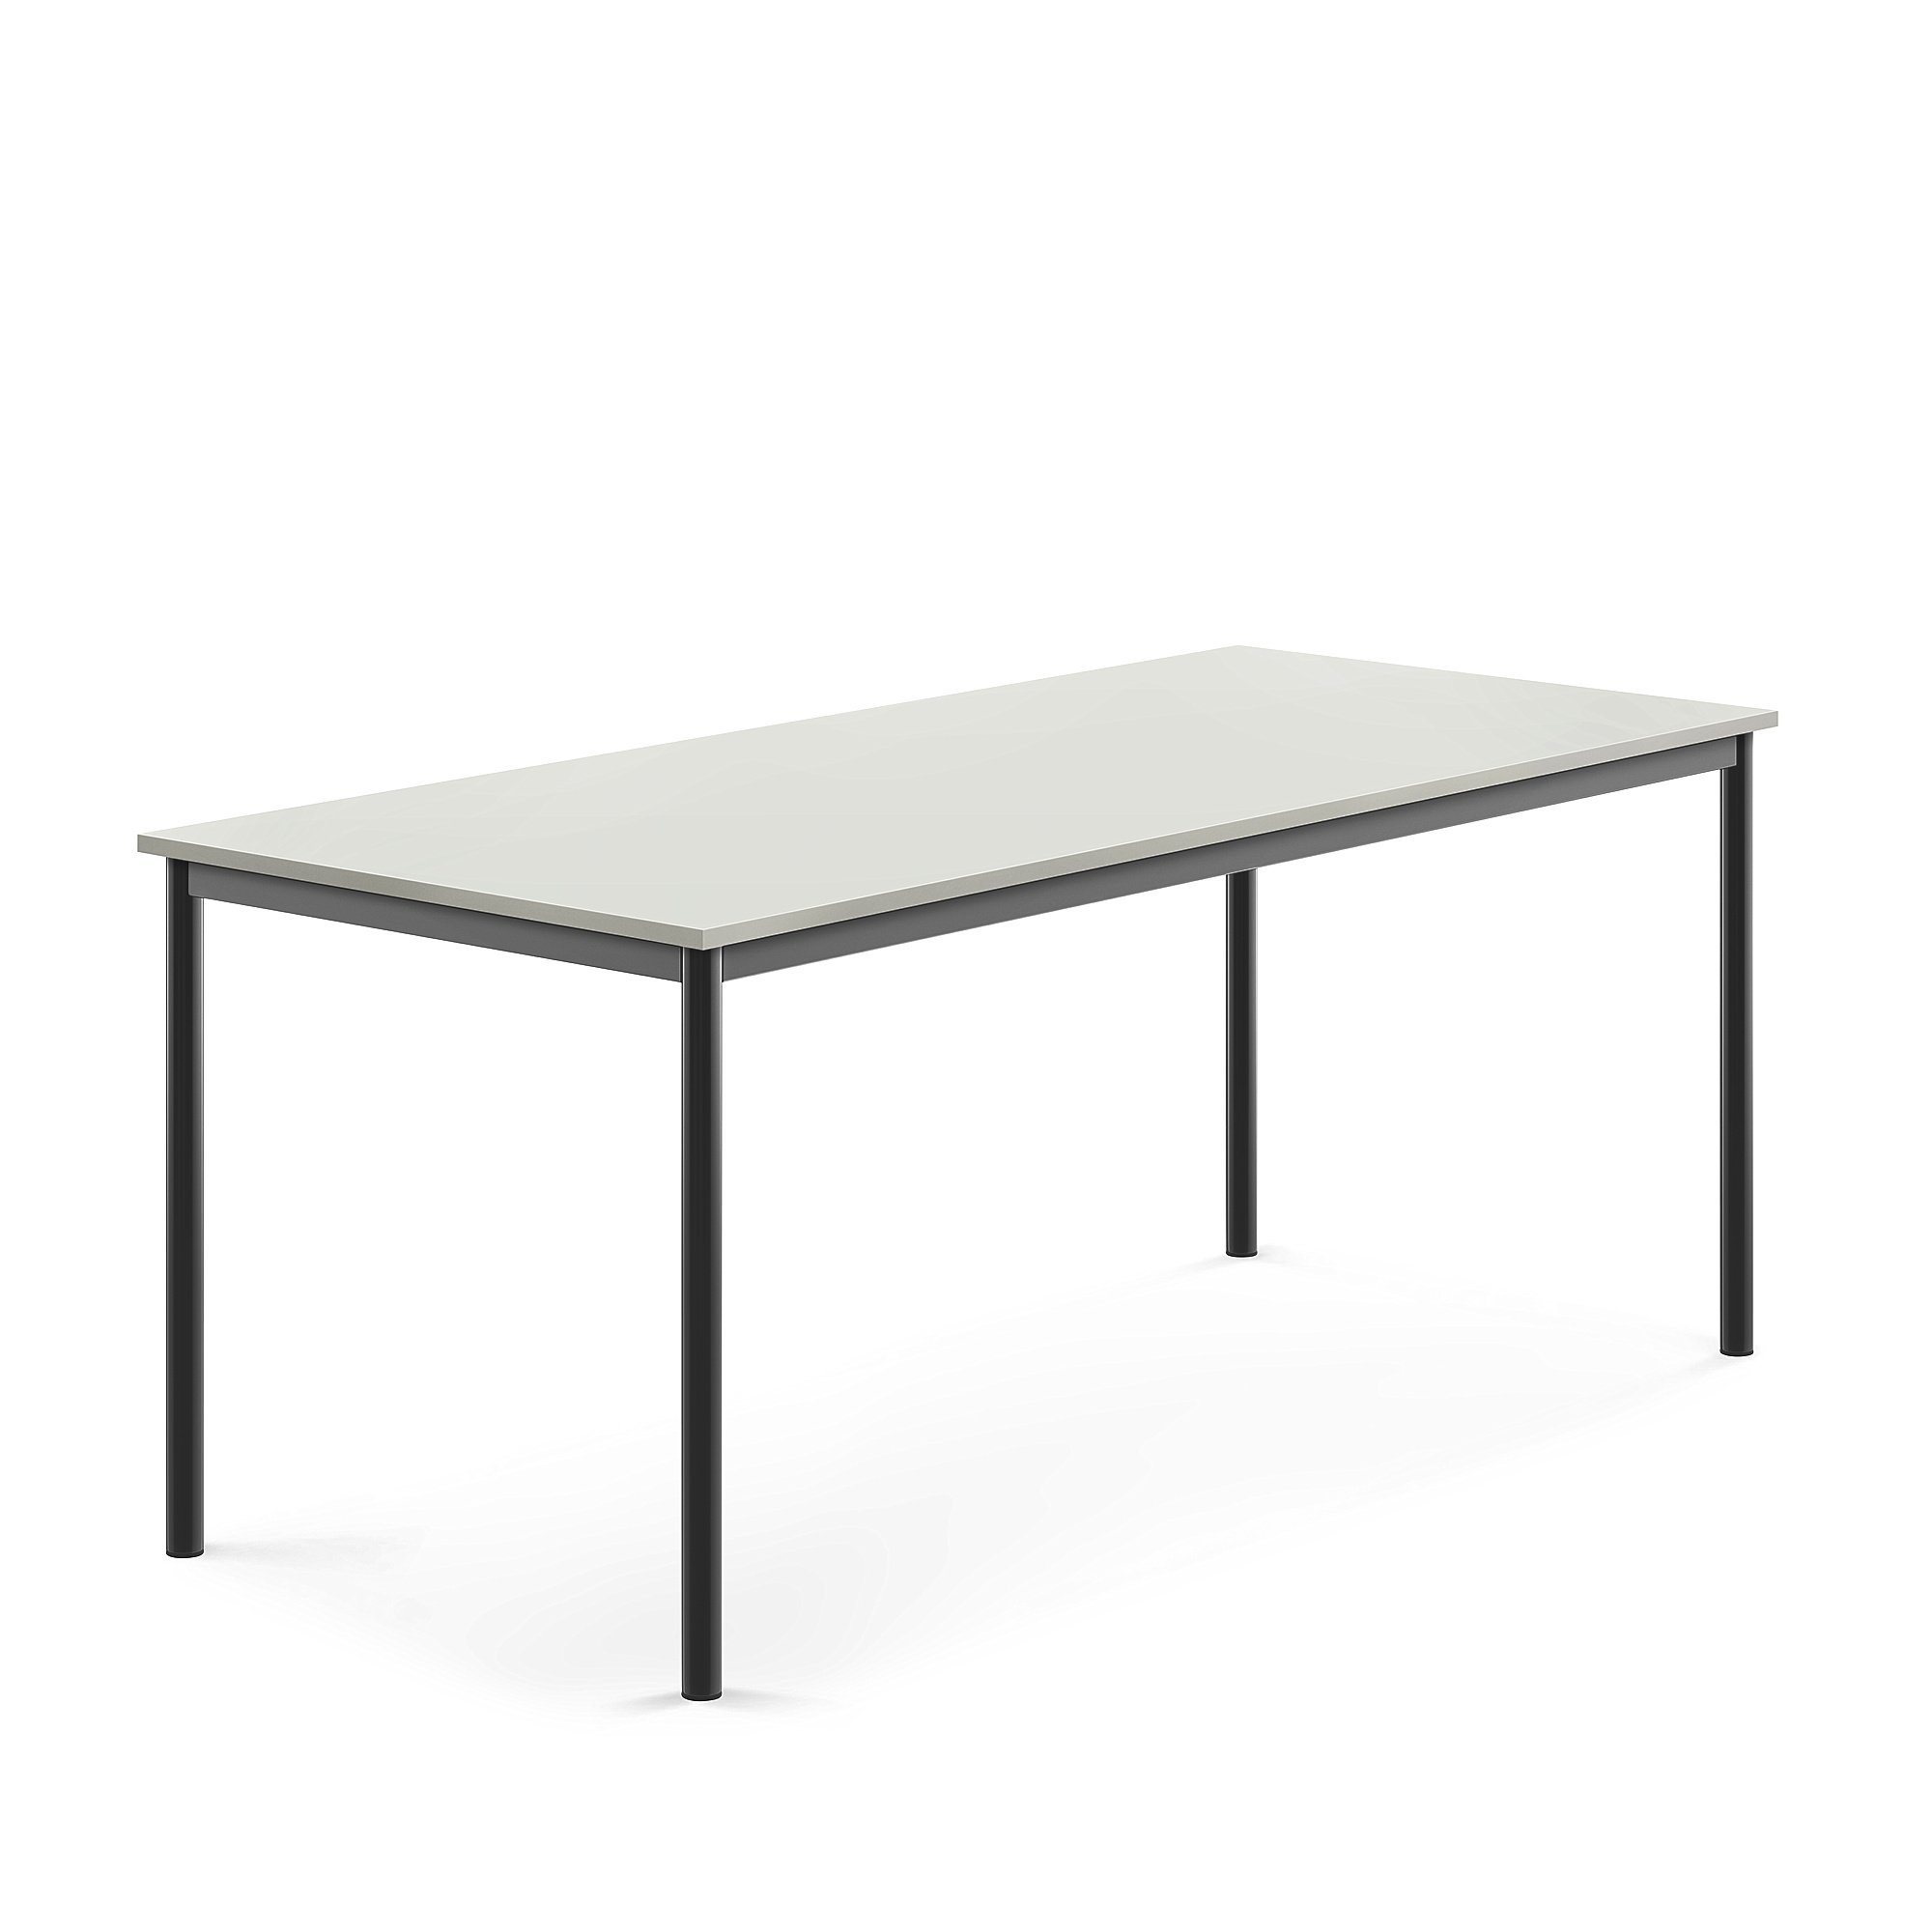 Stůl BORÅS, 1800x800x720 mm, antracitově šedé nohy, HPL deska, šedá